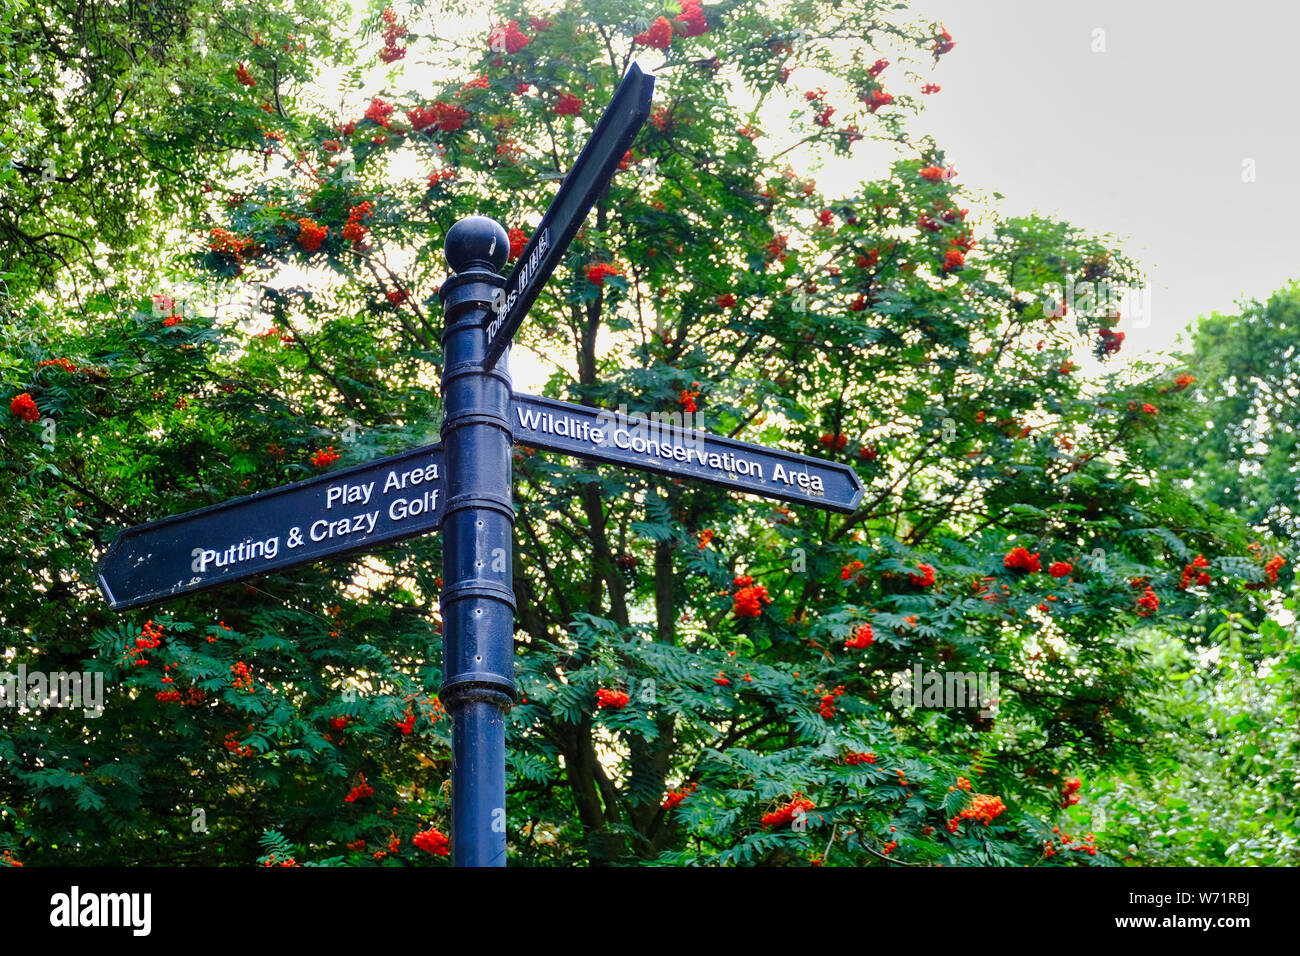 Hotham Park, Bognor Regis, W Sussex, UK. Park Wegweiser Wegweiser Bereiche zu Spielen und einem Wildlife Conservation Area. Eberesche (Sorbus aucuparia) Stockfoto